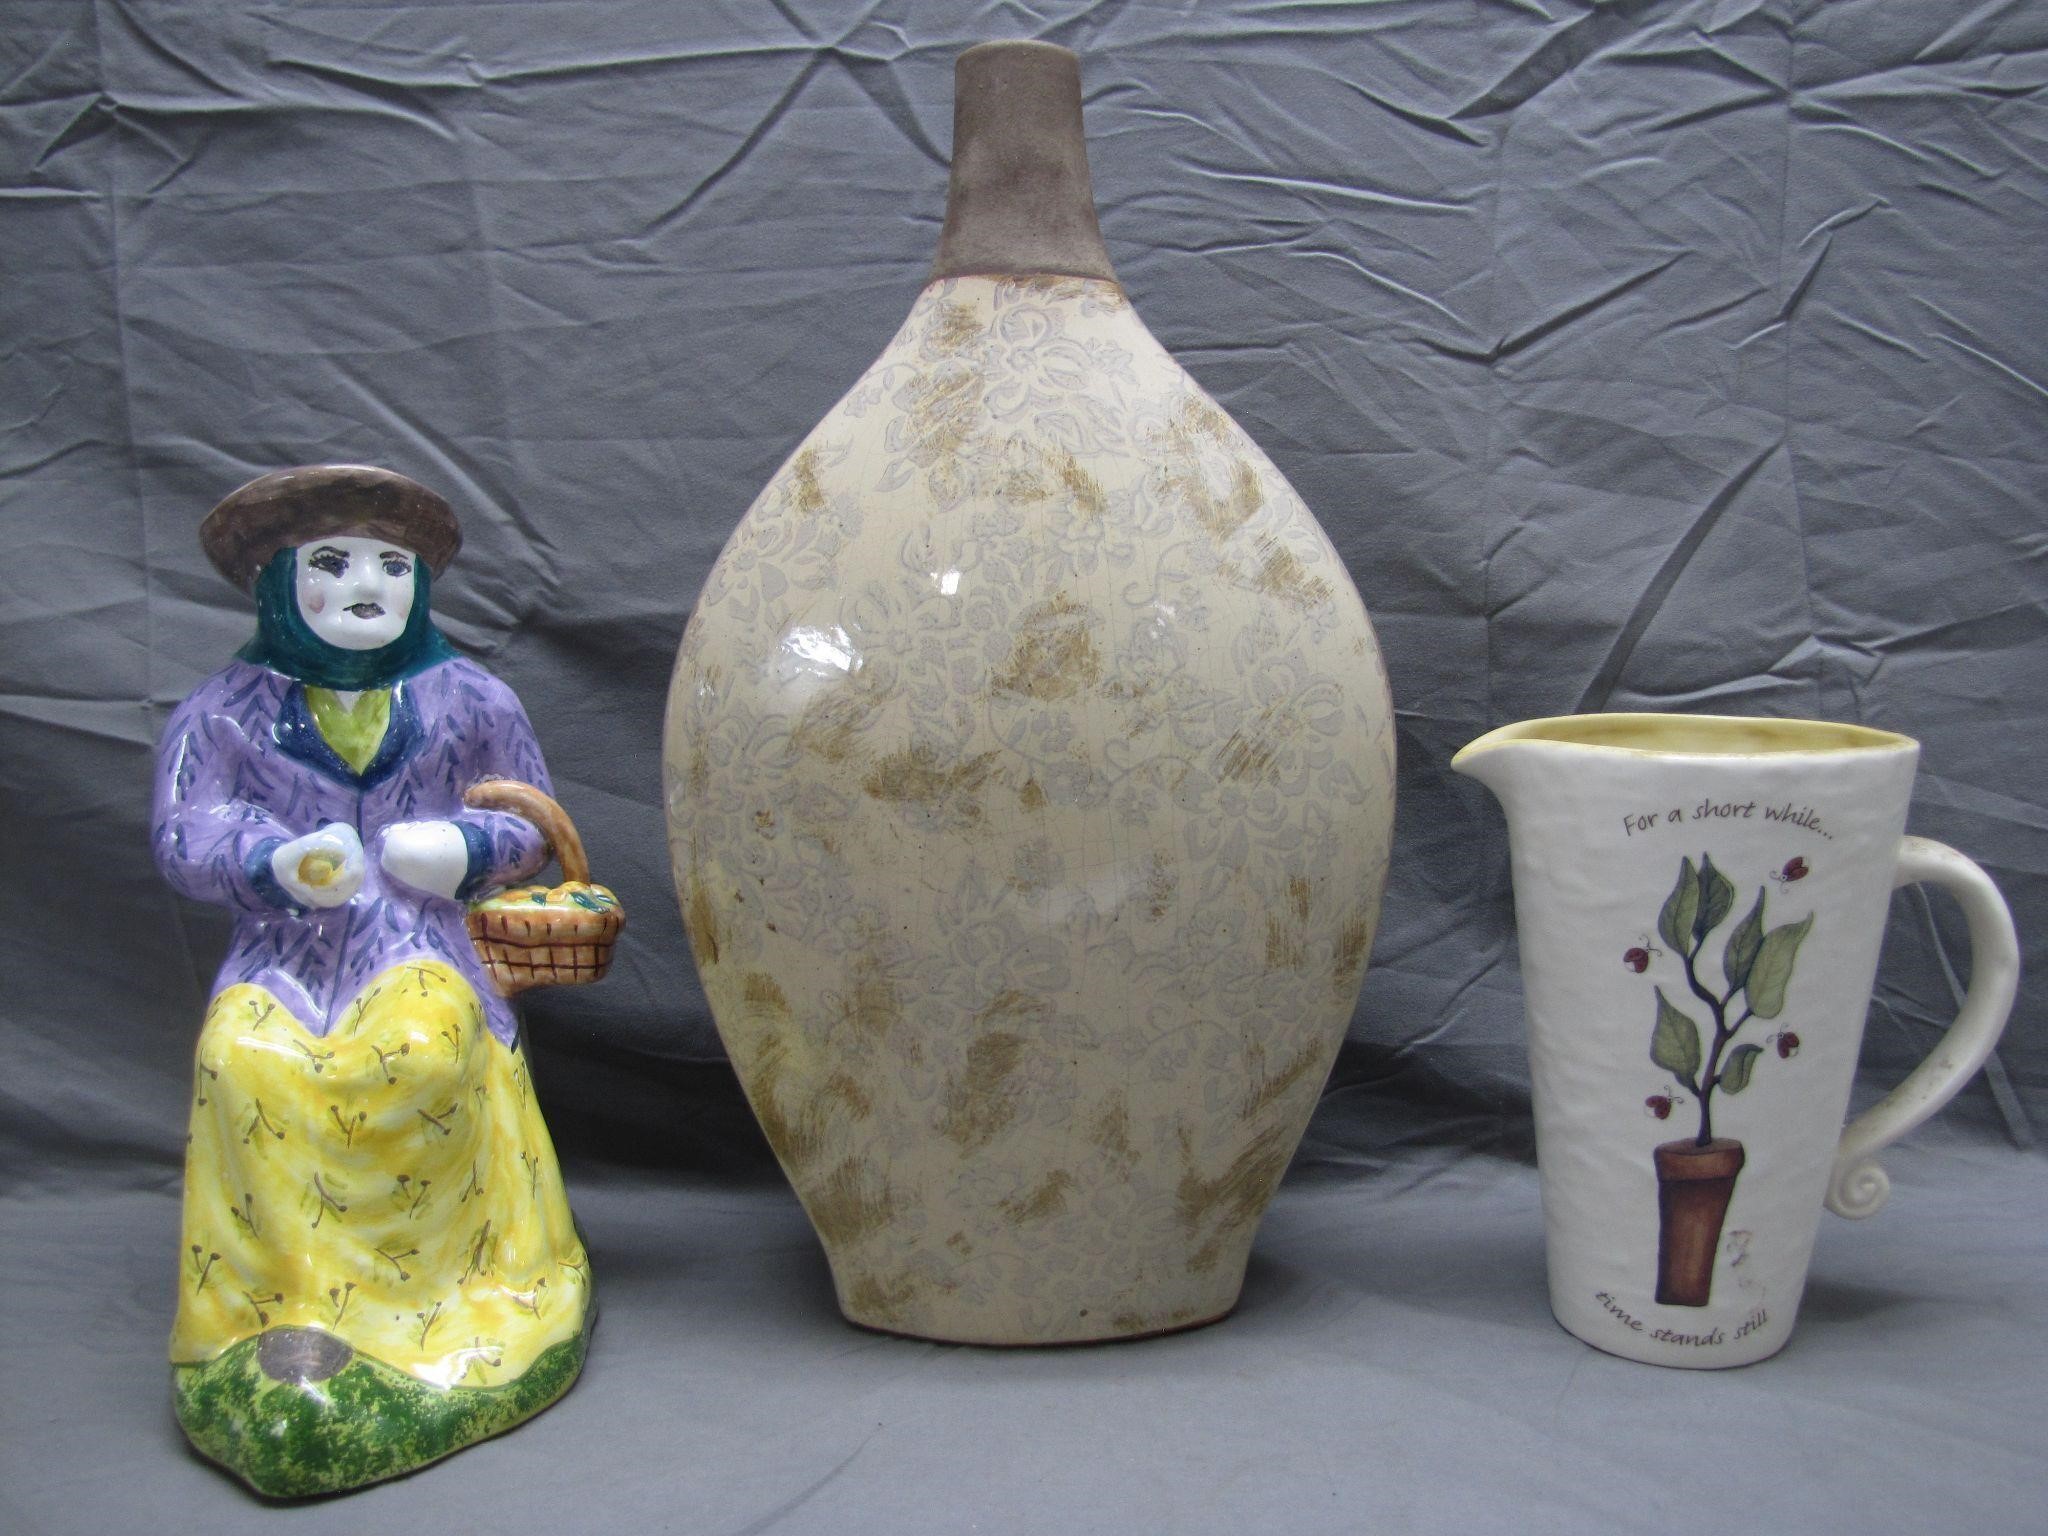 Lot of 3 Unique Ceramic Vases